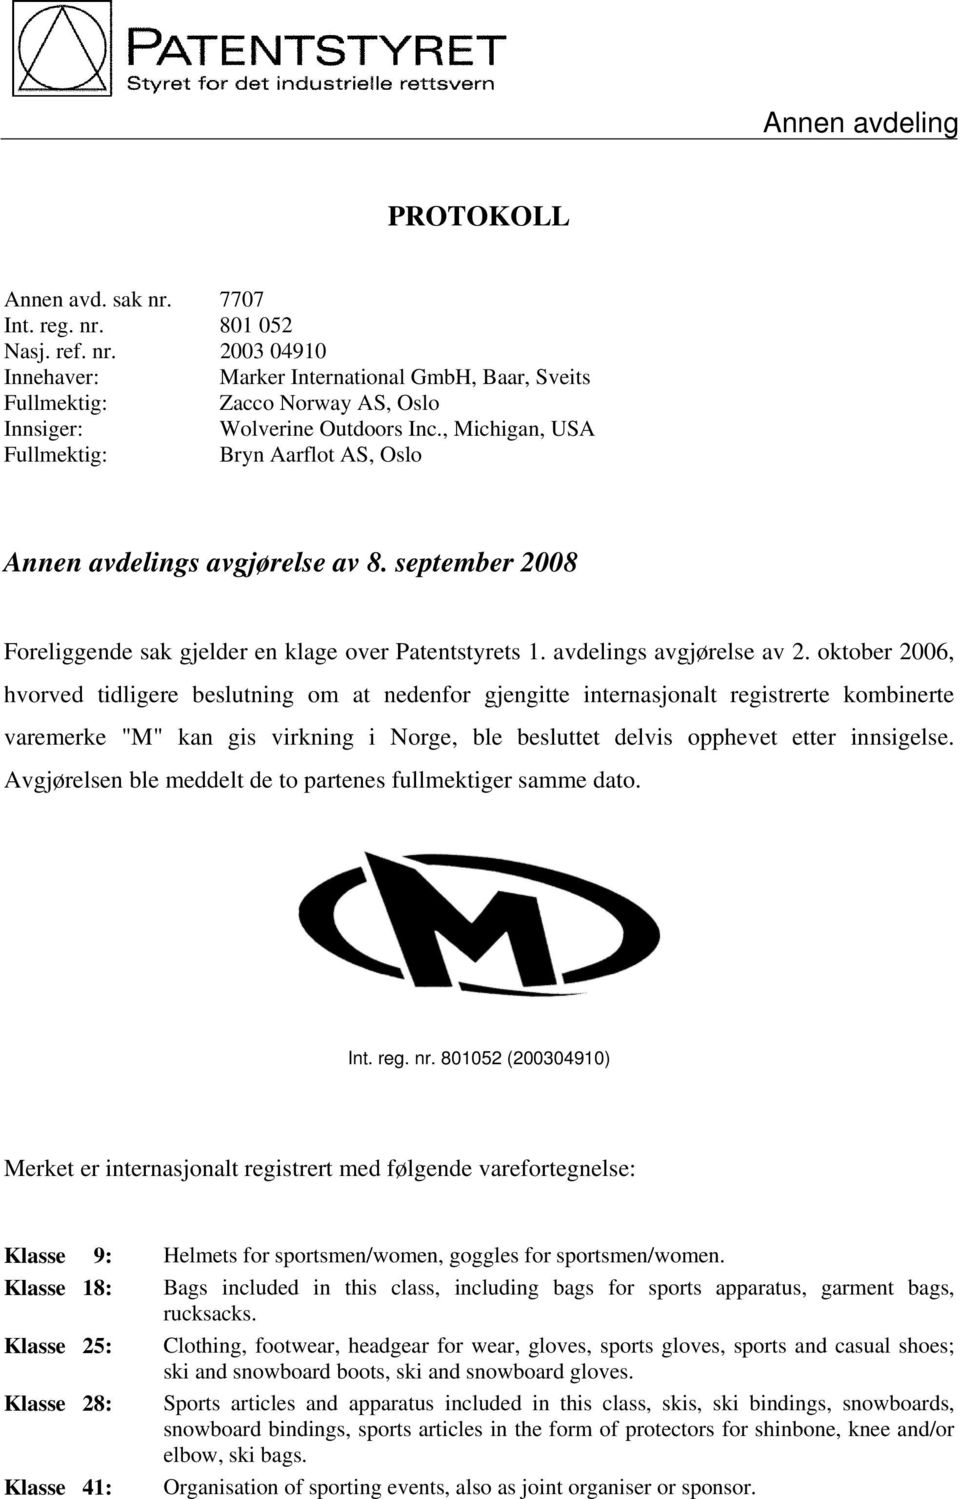 oktober 2006, hvorved tidligere beslutning om at nedenfor gjengitte internasjonalt registrerte kombinerte varemerke "M" kan gis virkning i Norge, ble besluttet delvis opphevet etter innsigelse.